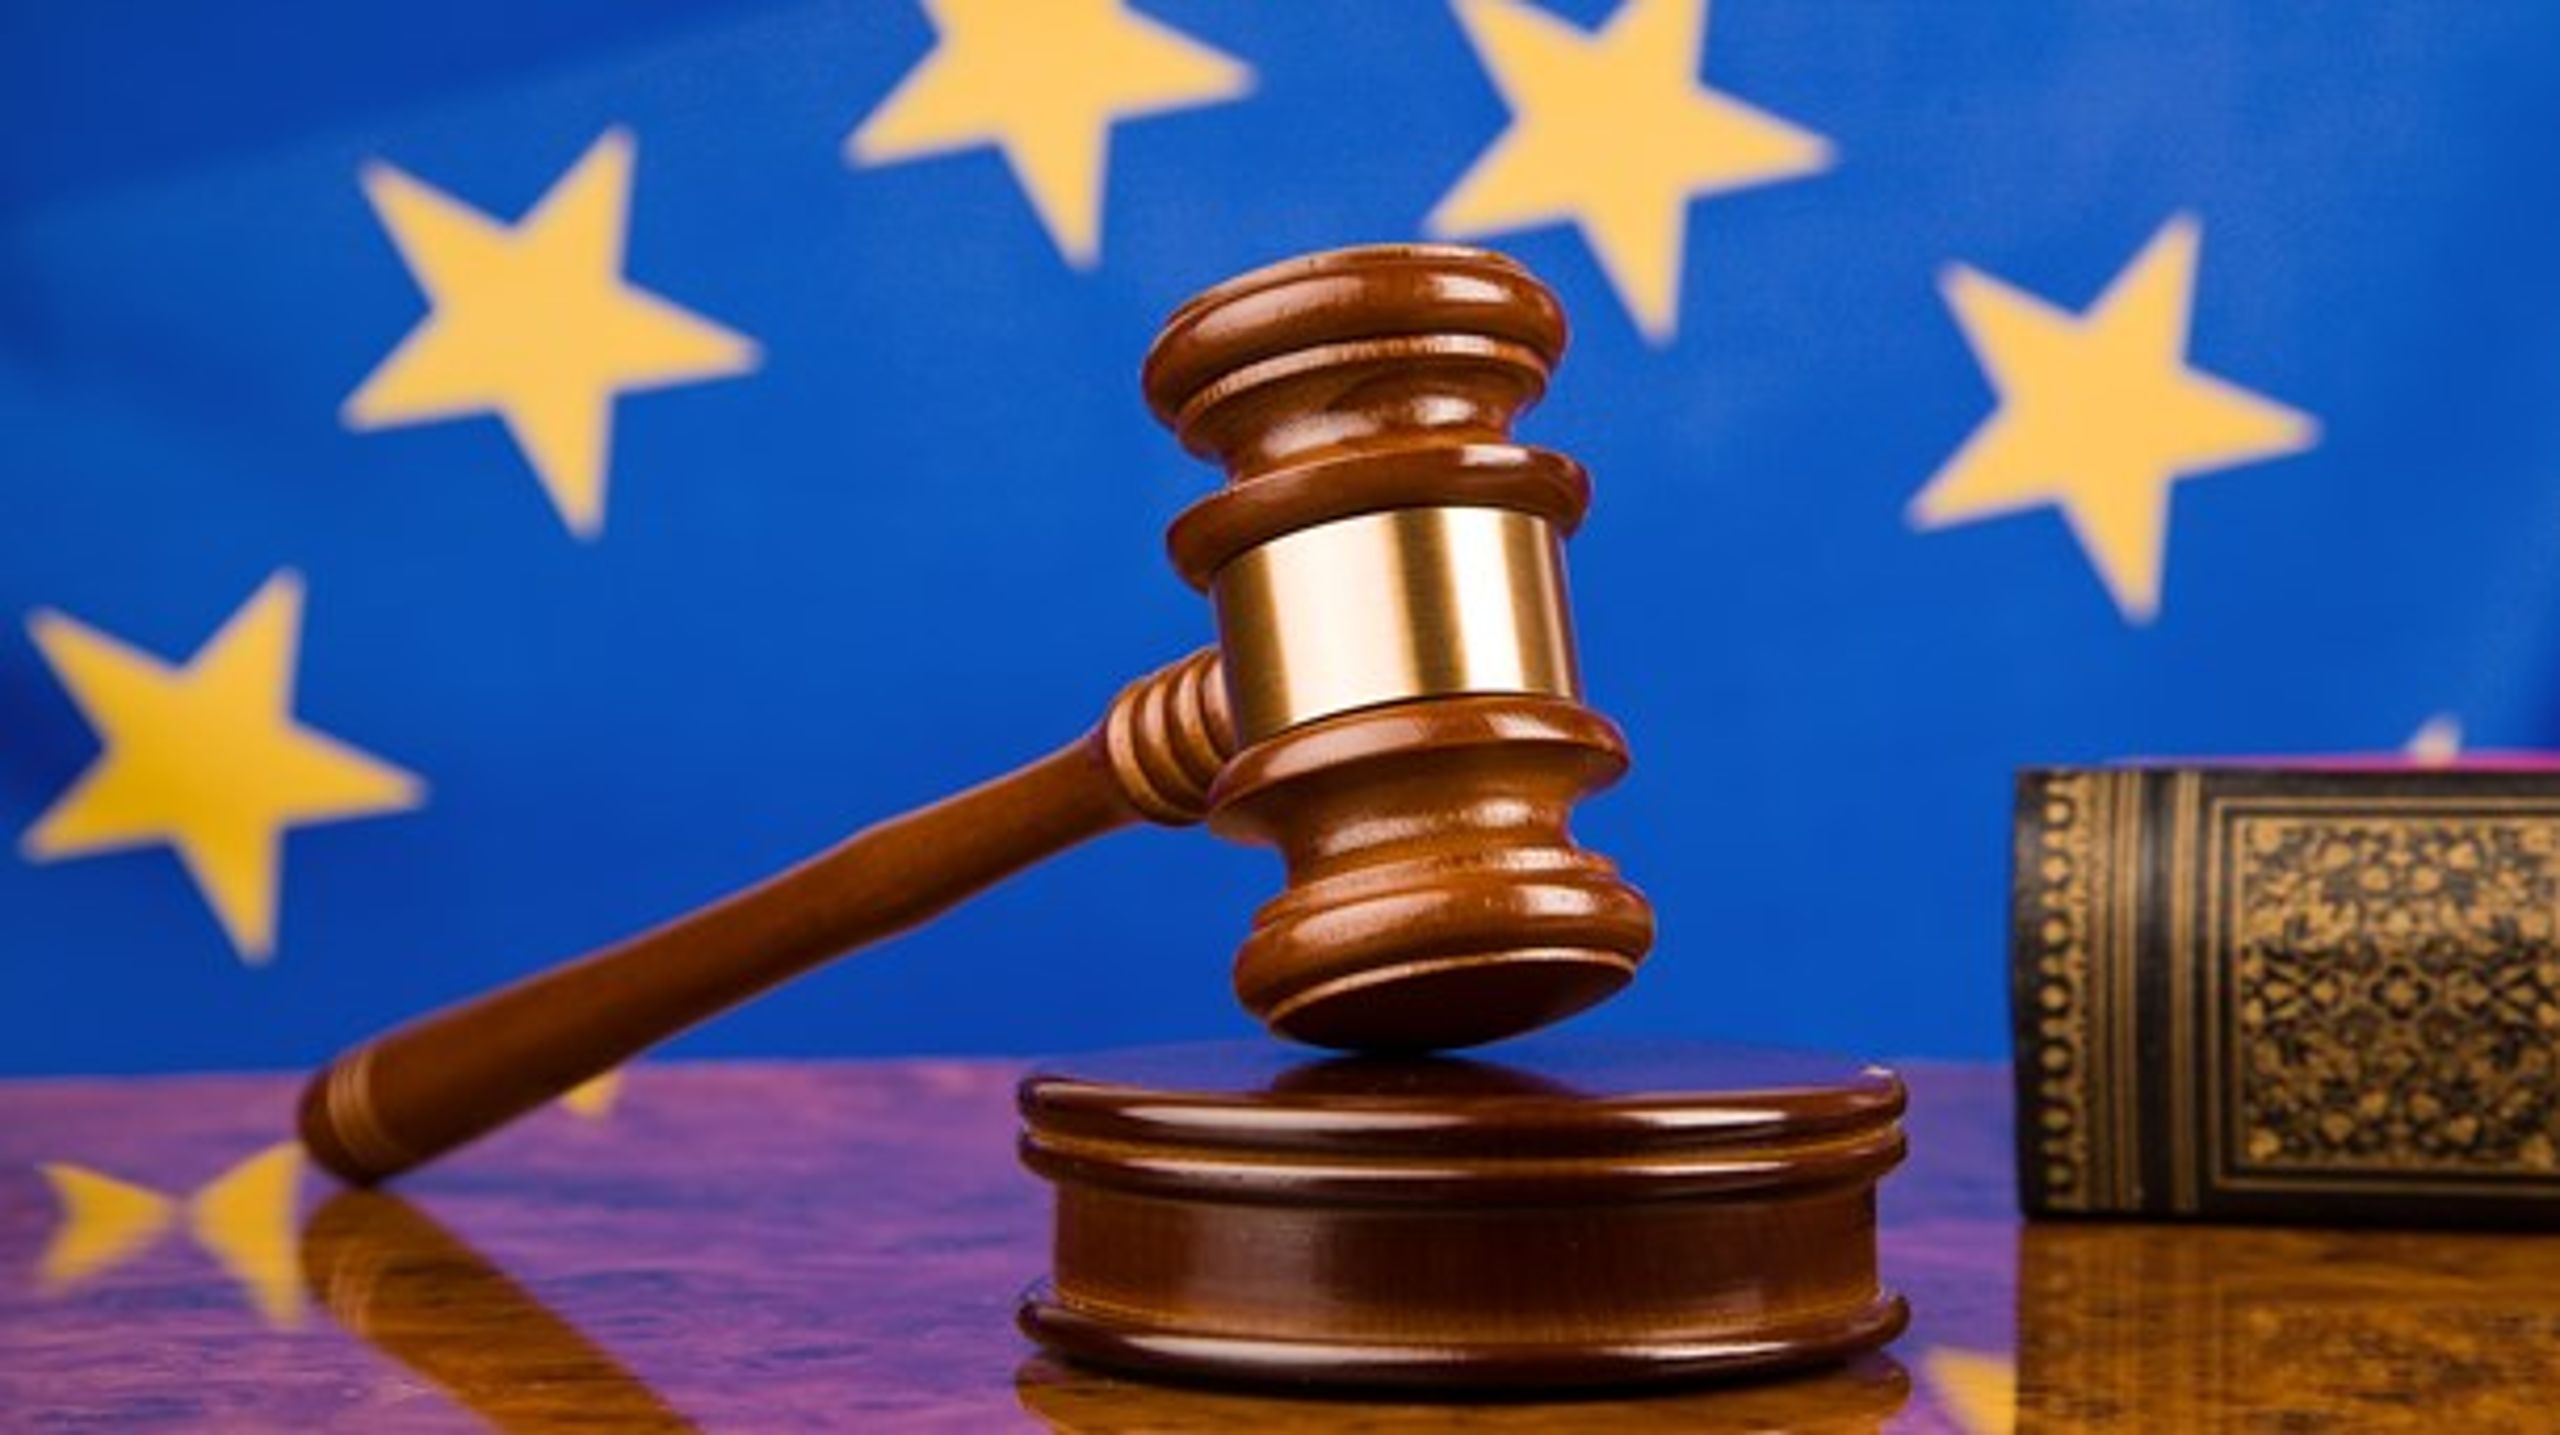 Danmark kan have kurs mod EU-Domstolen i flere sager, hvis der ikke rettes ind, advarer EU-Kommissionen.